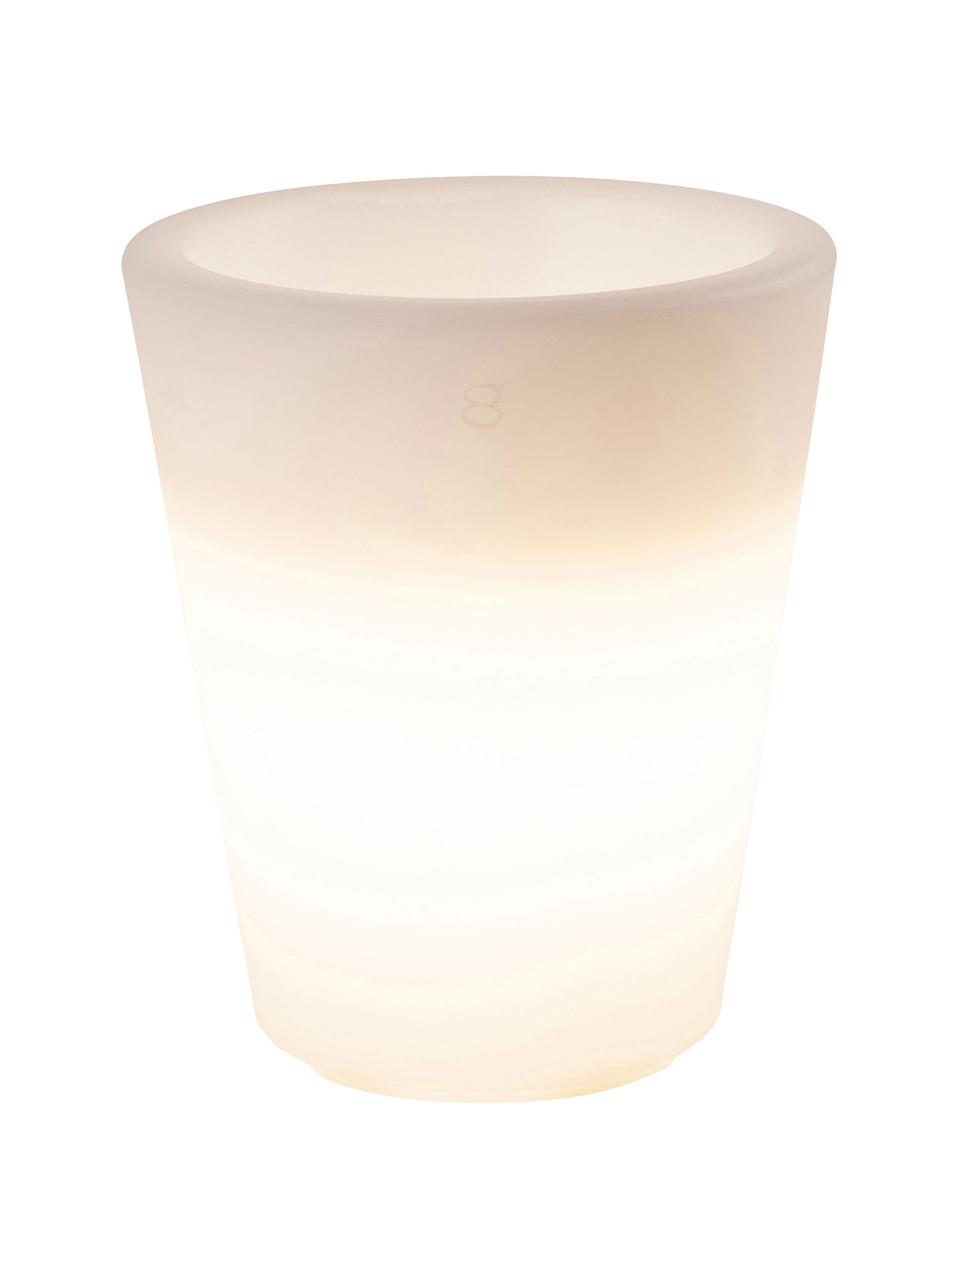 Bodenleuchte Shining Pot mit Stecker, Leuchte: Kunststoff, Weiss, Ø 34 x H 39 cm